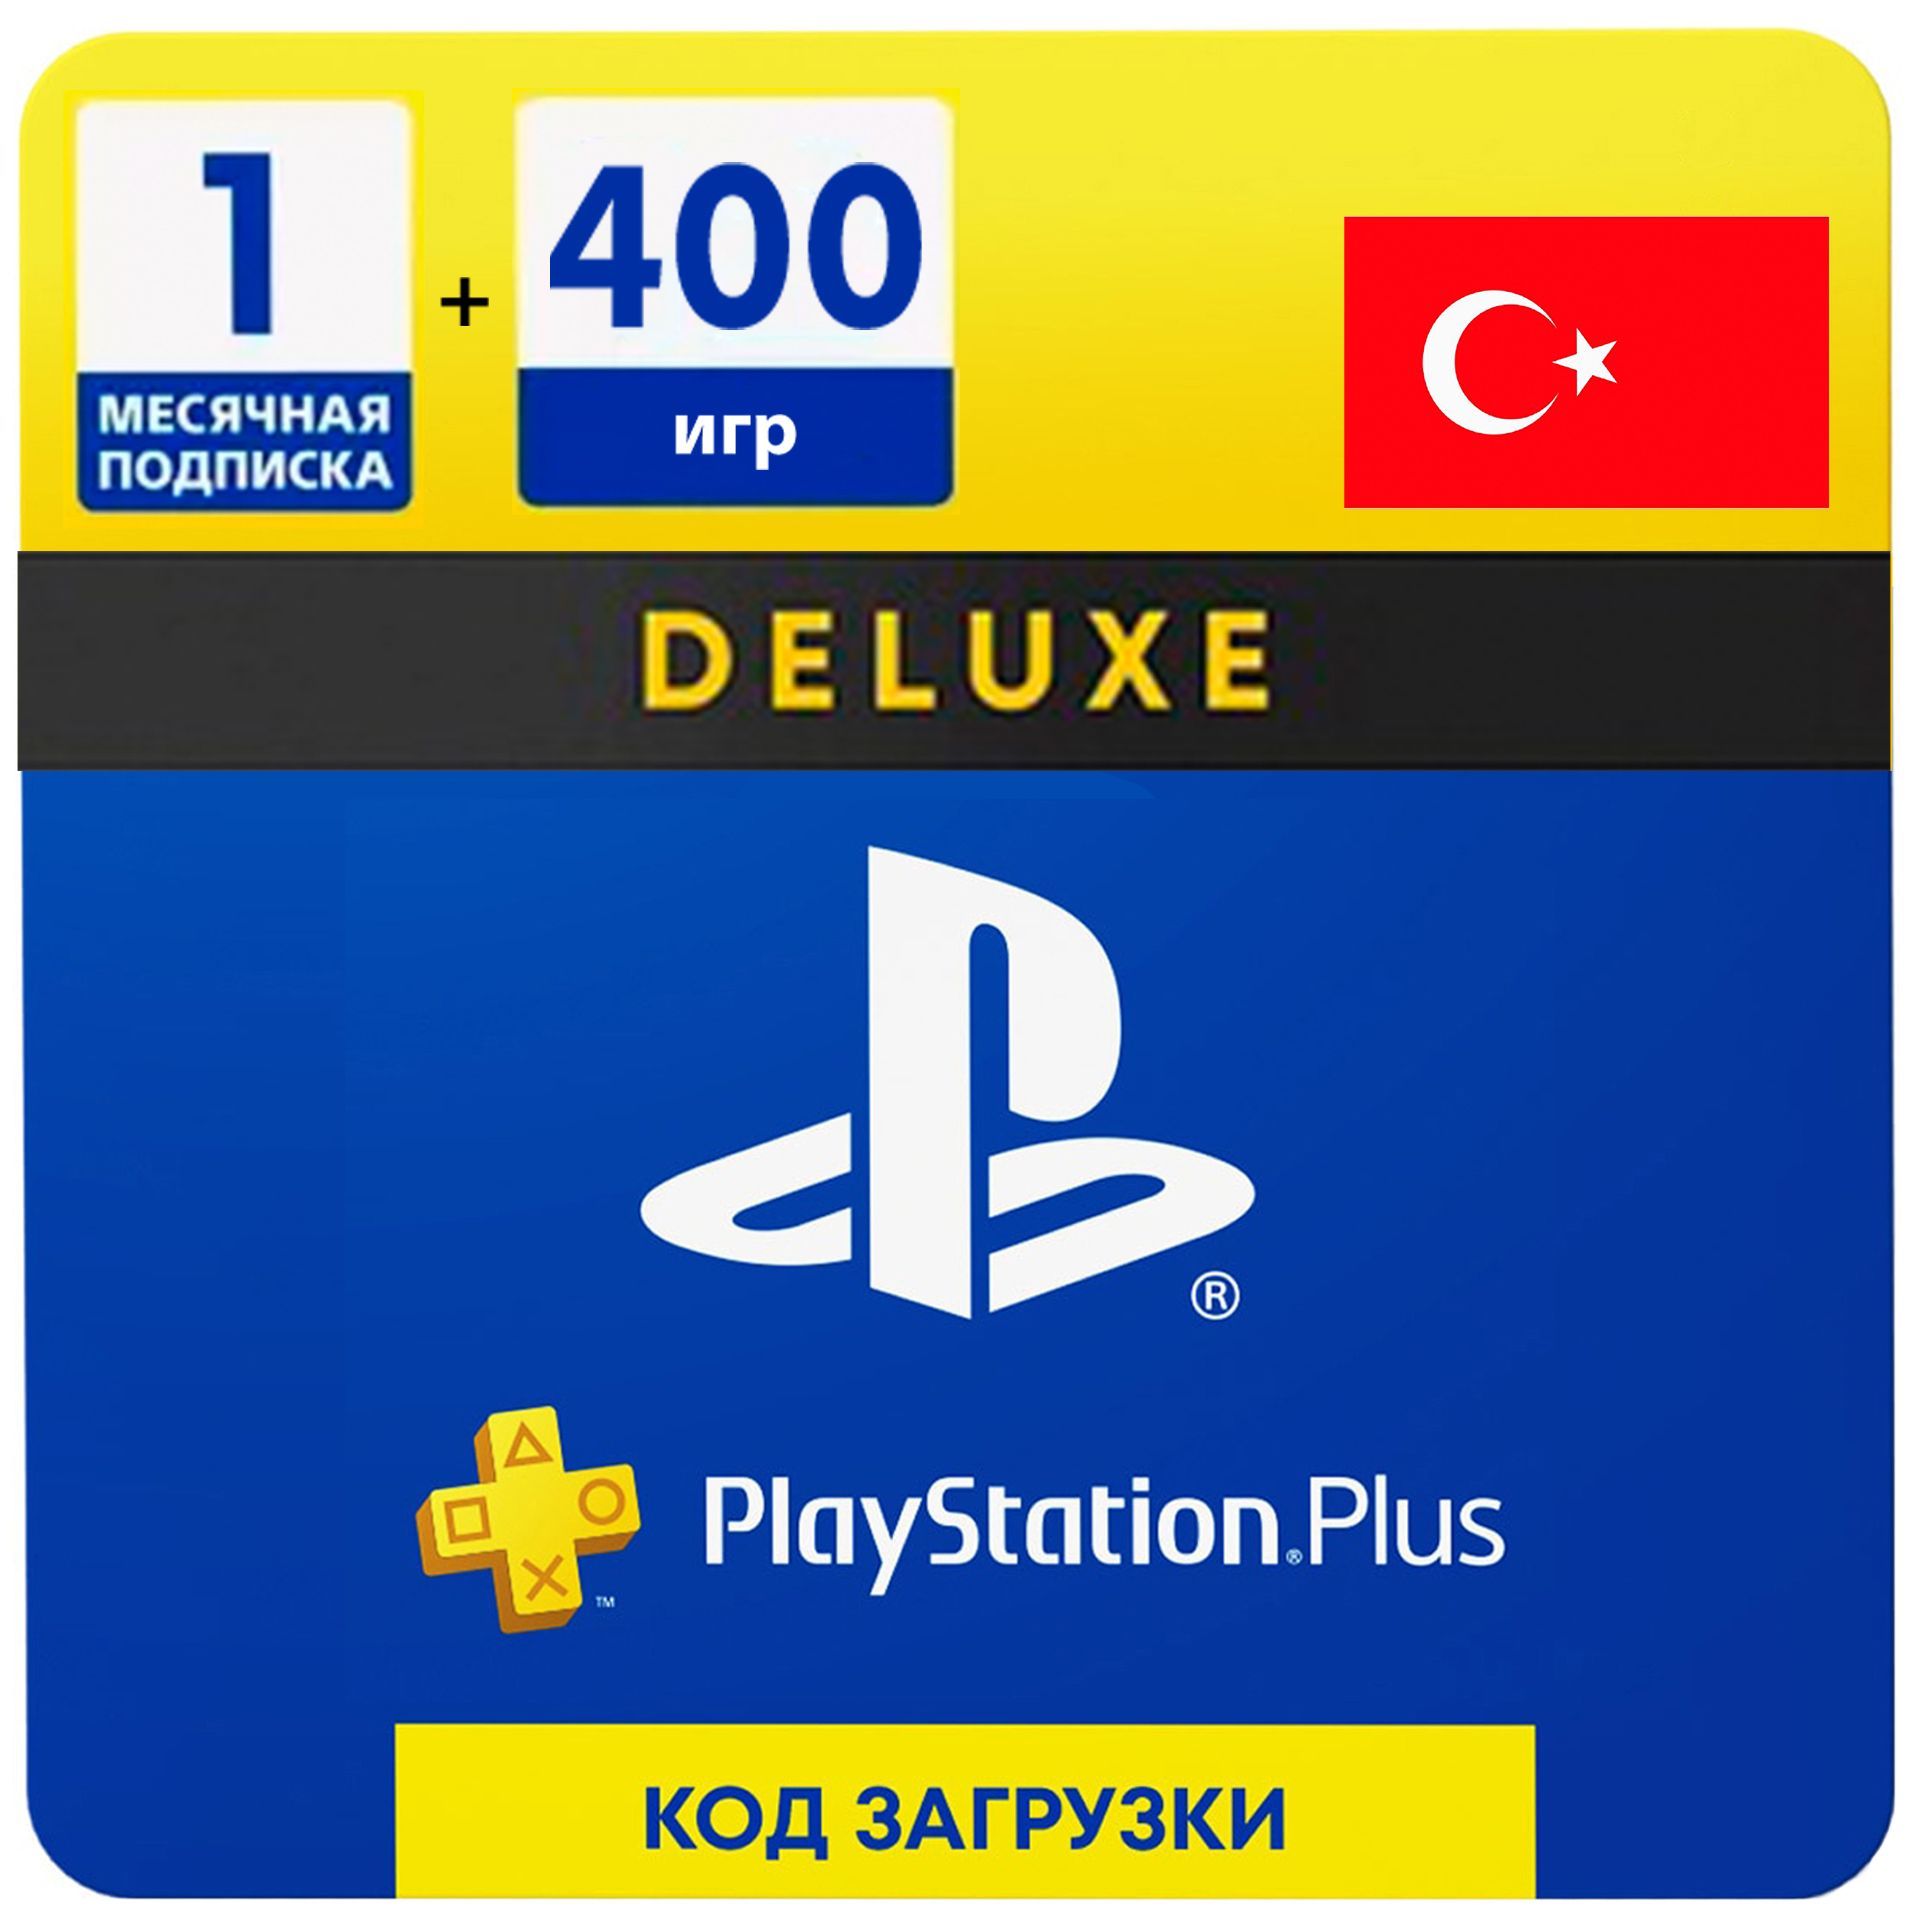 Турецкая подписка ps5 купить. PLAYSTATION Plus Deluxe 12. PS Plus Deluxe на 12 мес. PS Plus Deluxe Turkey. Подписка PS Plus Deluxe Турция.